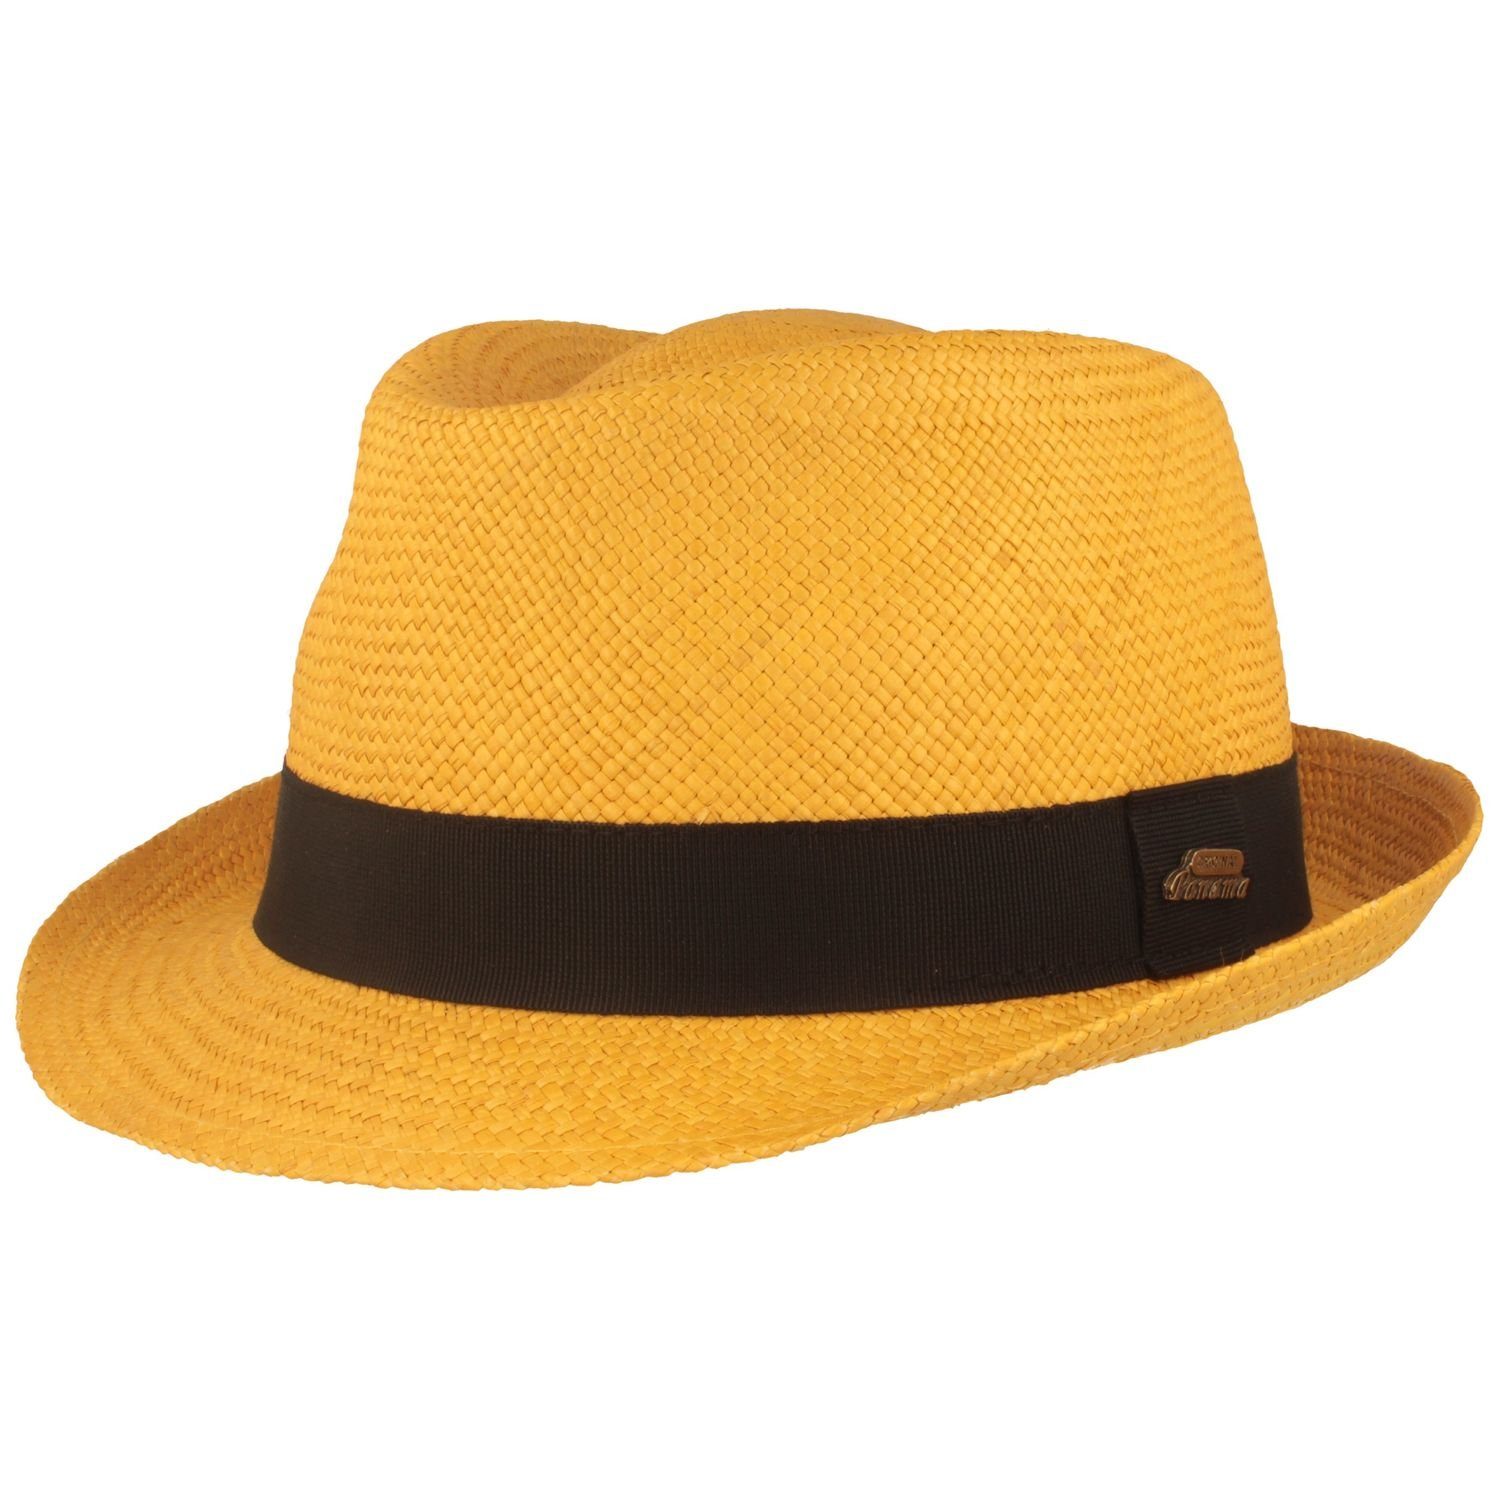 Breiter Strohhut original Panama Hut Trilby mit UV-Schutz 50+ gelb